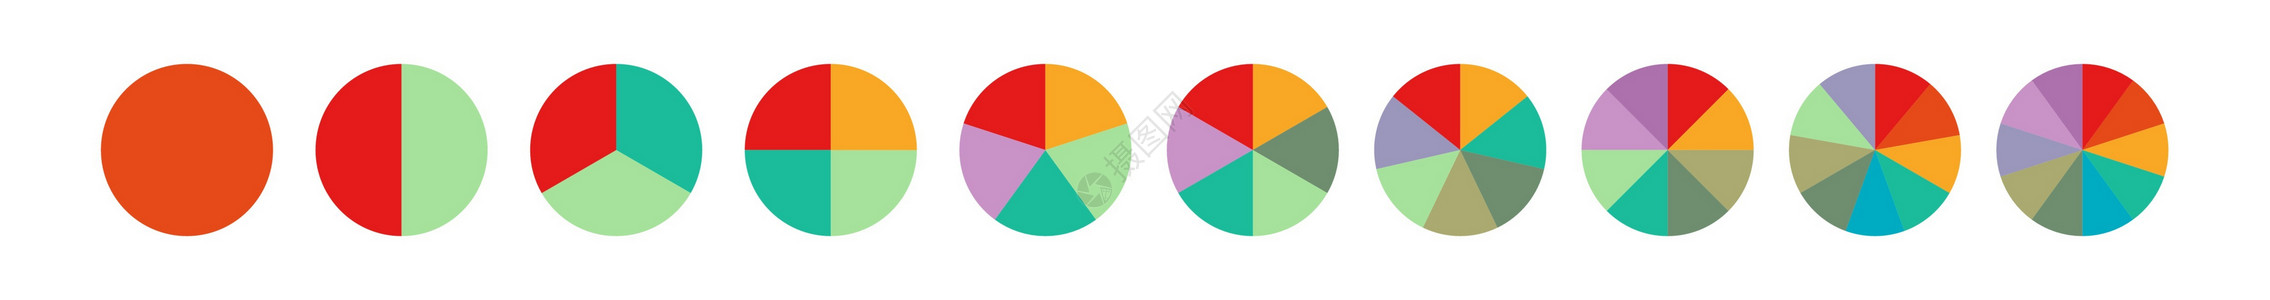 9至10岁1 2 3 4 5 6 7 8 9 10 个步骤或部分的彩色饼图集半径库存图表空白草图顺序手绘圆圈报告概念设计图片